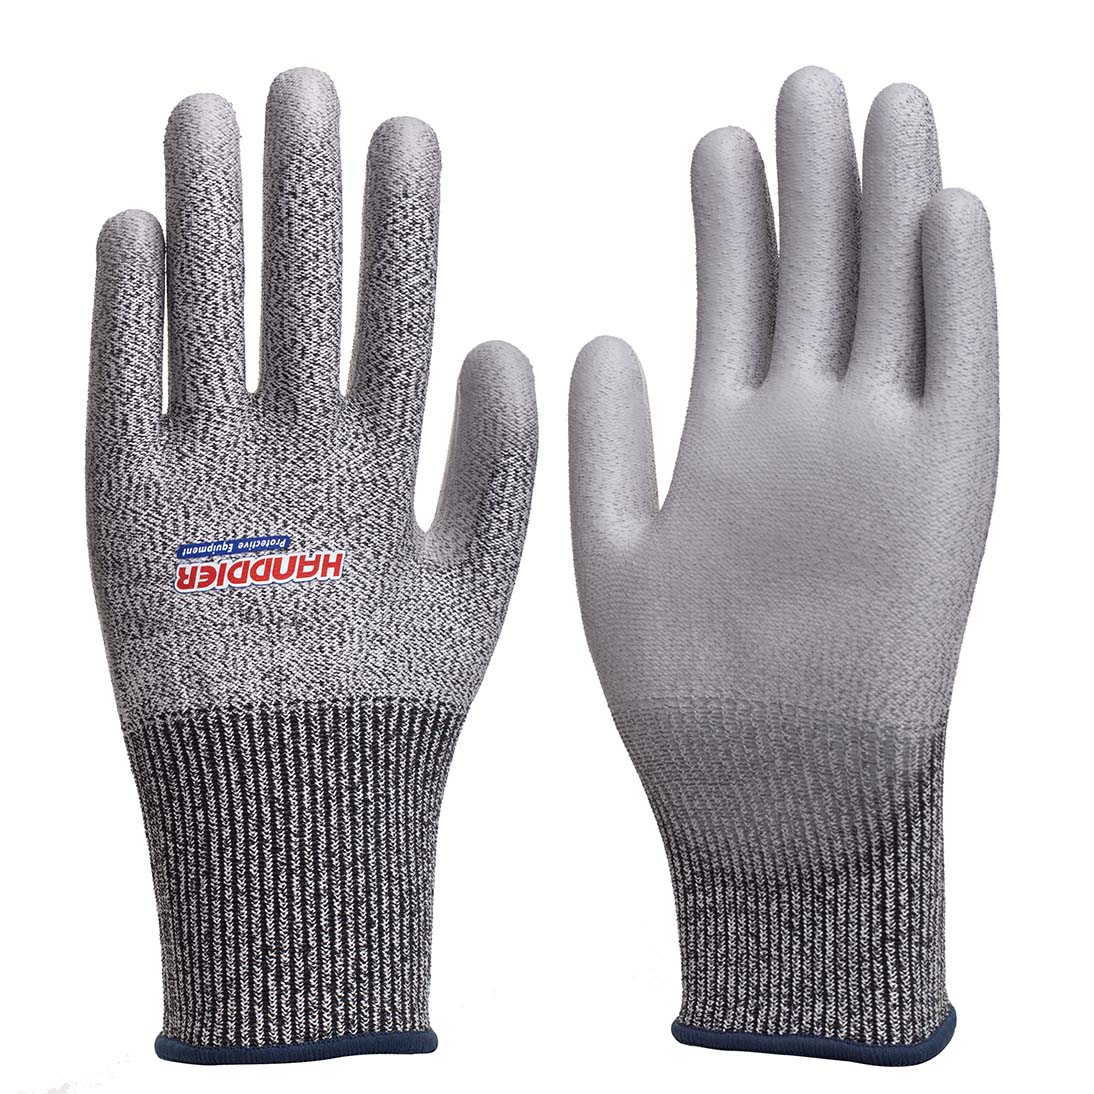 13G cut resistant A3 glove PU palm coated 